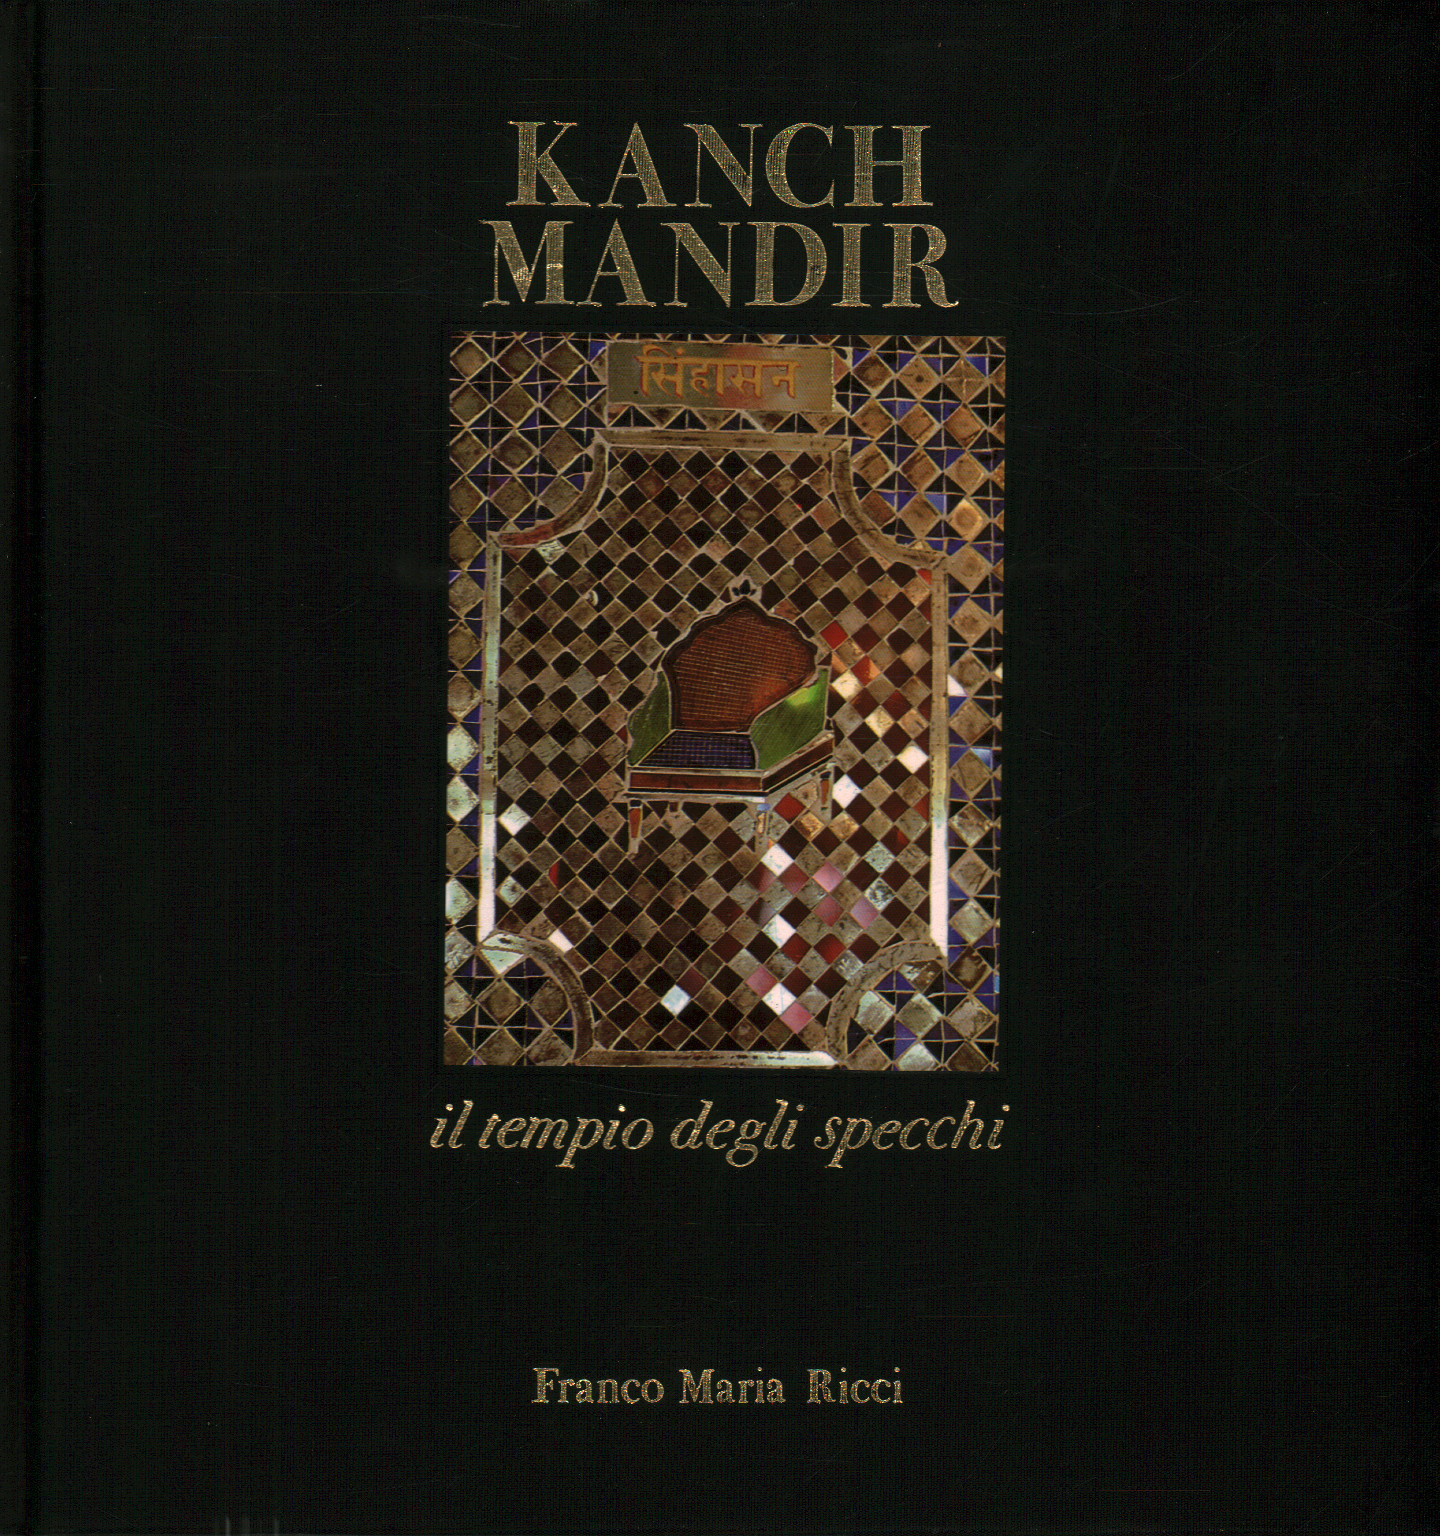 Kanch Mandir le temple des miroirs, s.a.